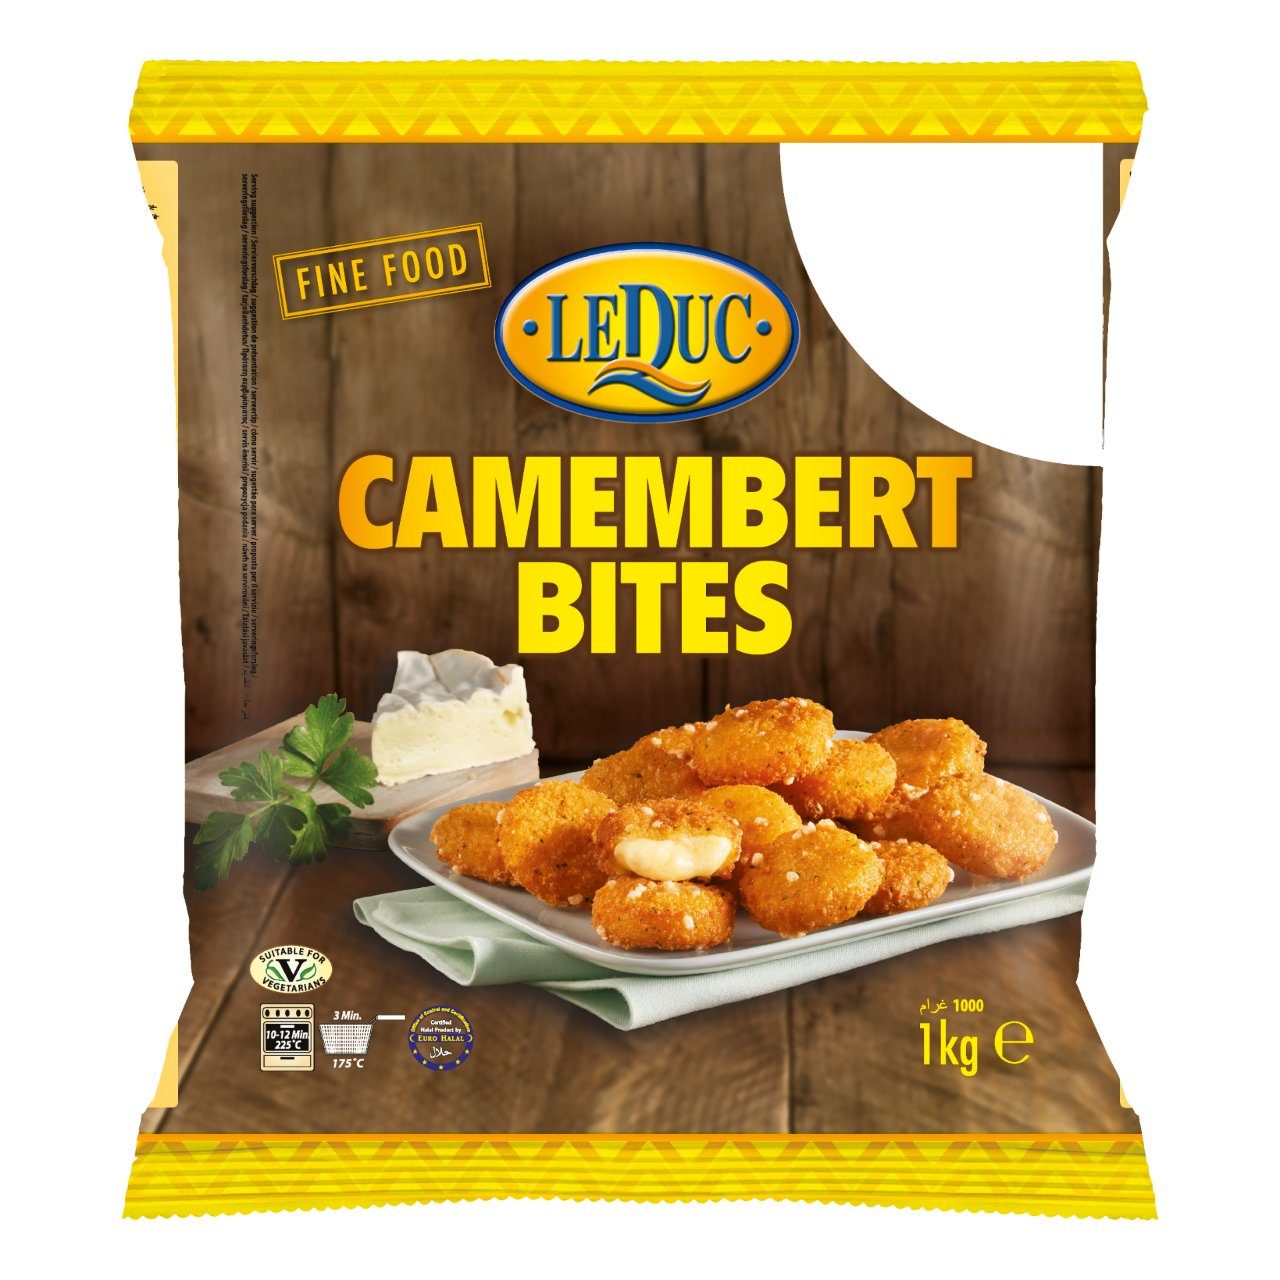 Camembert bites